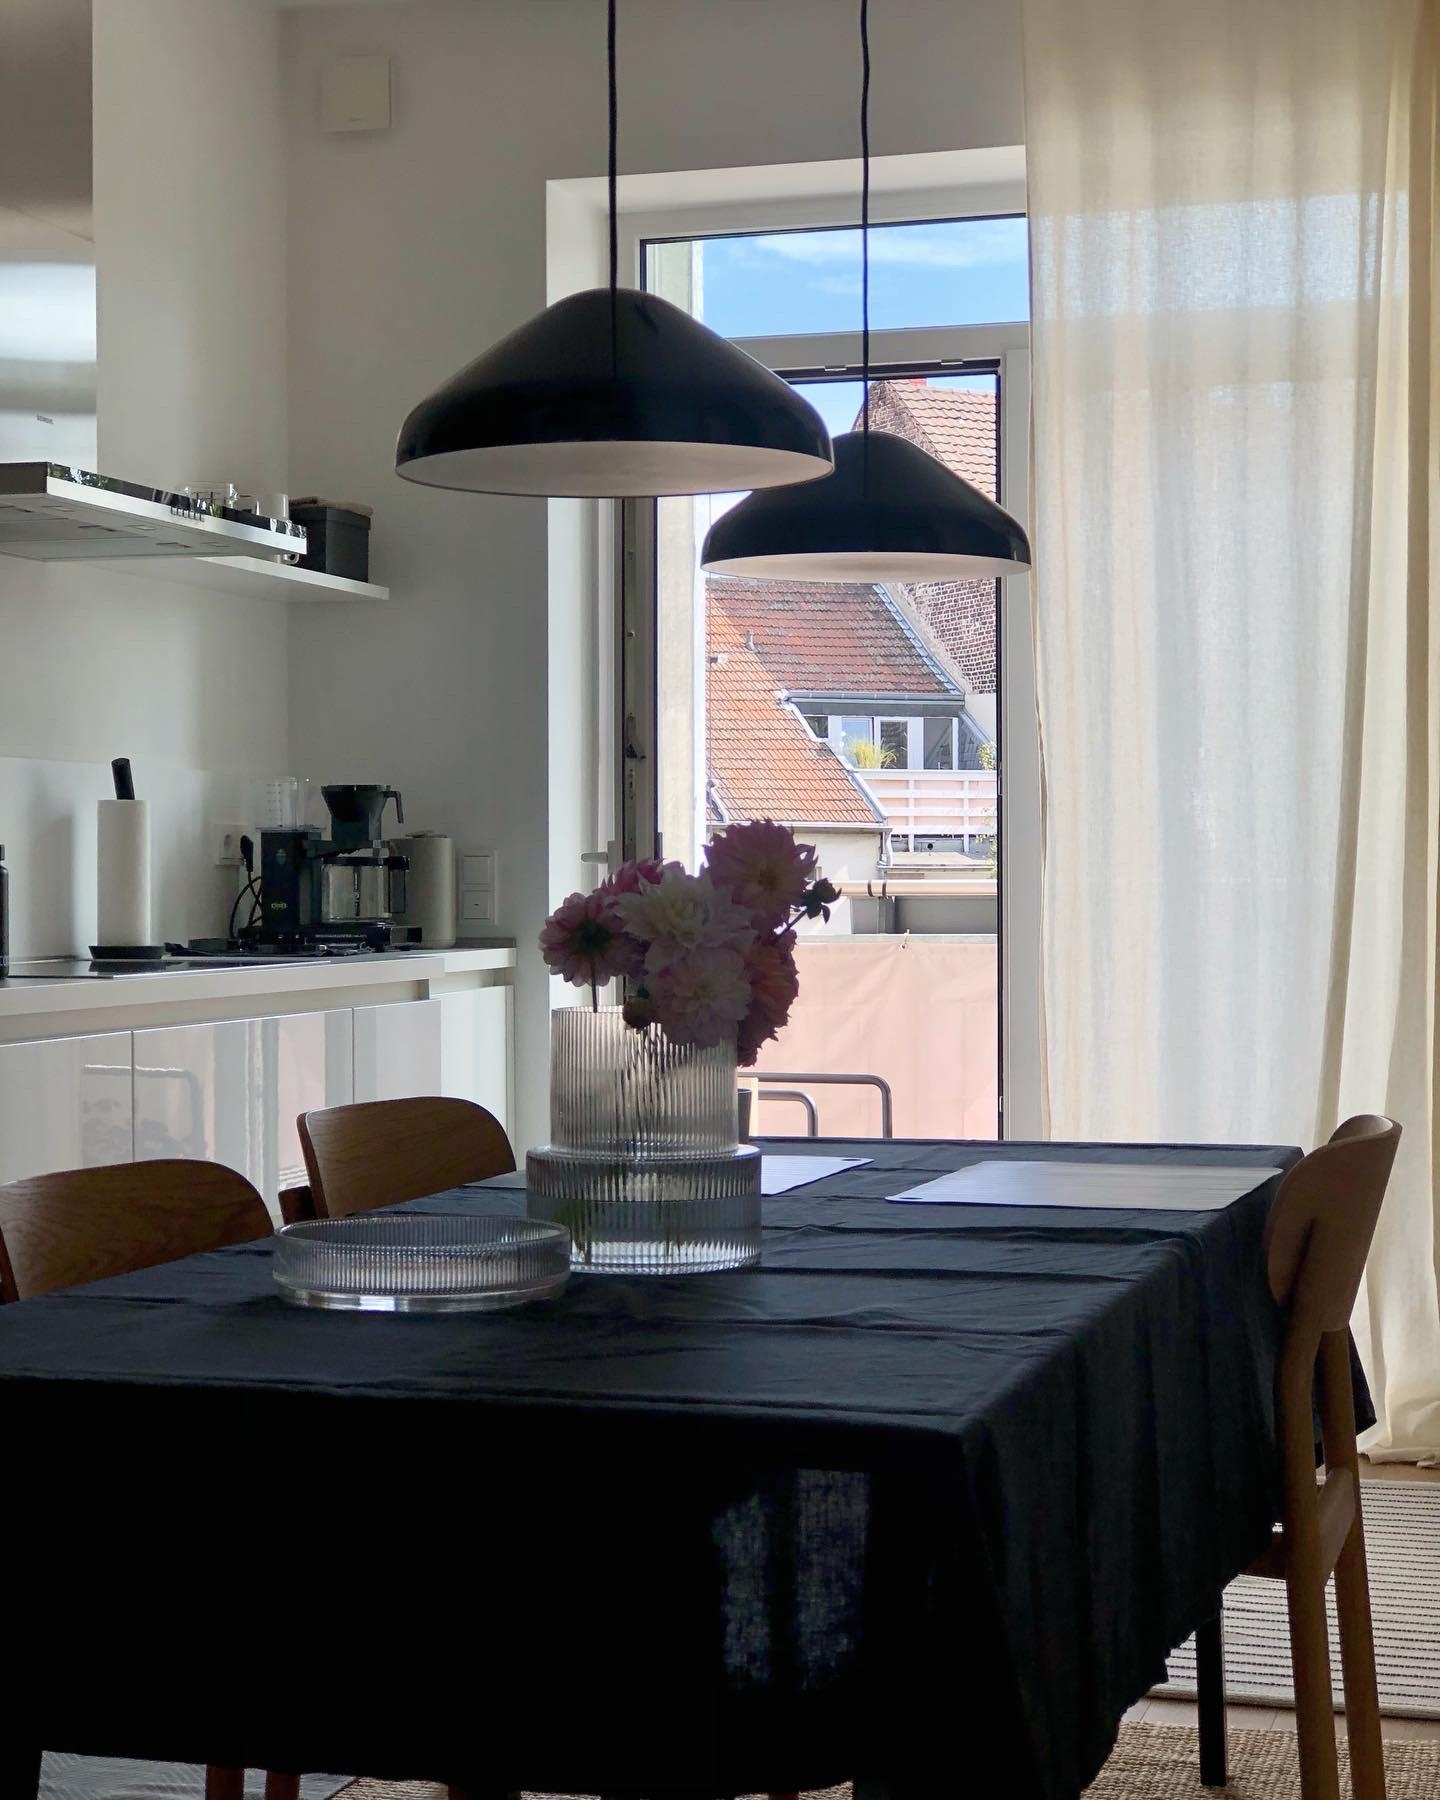 #kitchen #küche #weiß #schwarz #whitekitchen #balkon #lampe #hay #esstisch #esszimmer #stühle #scandi #couchstyle #home 